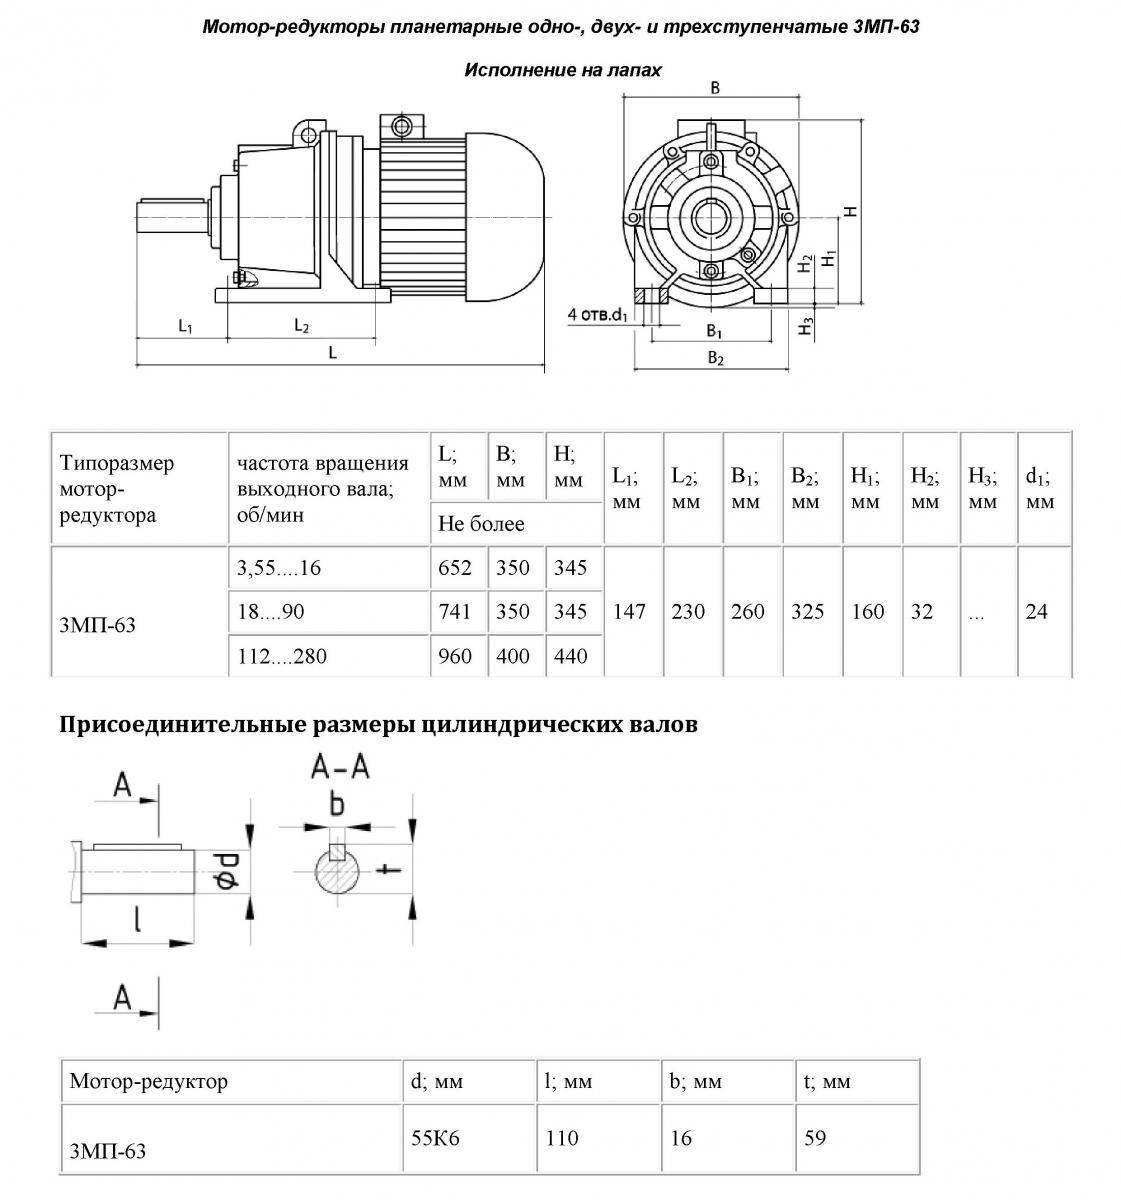 Особенности конструкций мотор-редукторов для различных условий эксплуатации